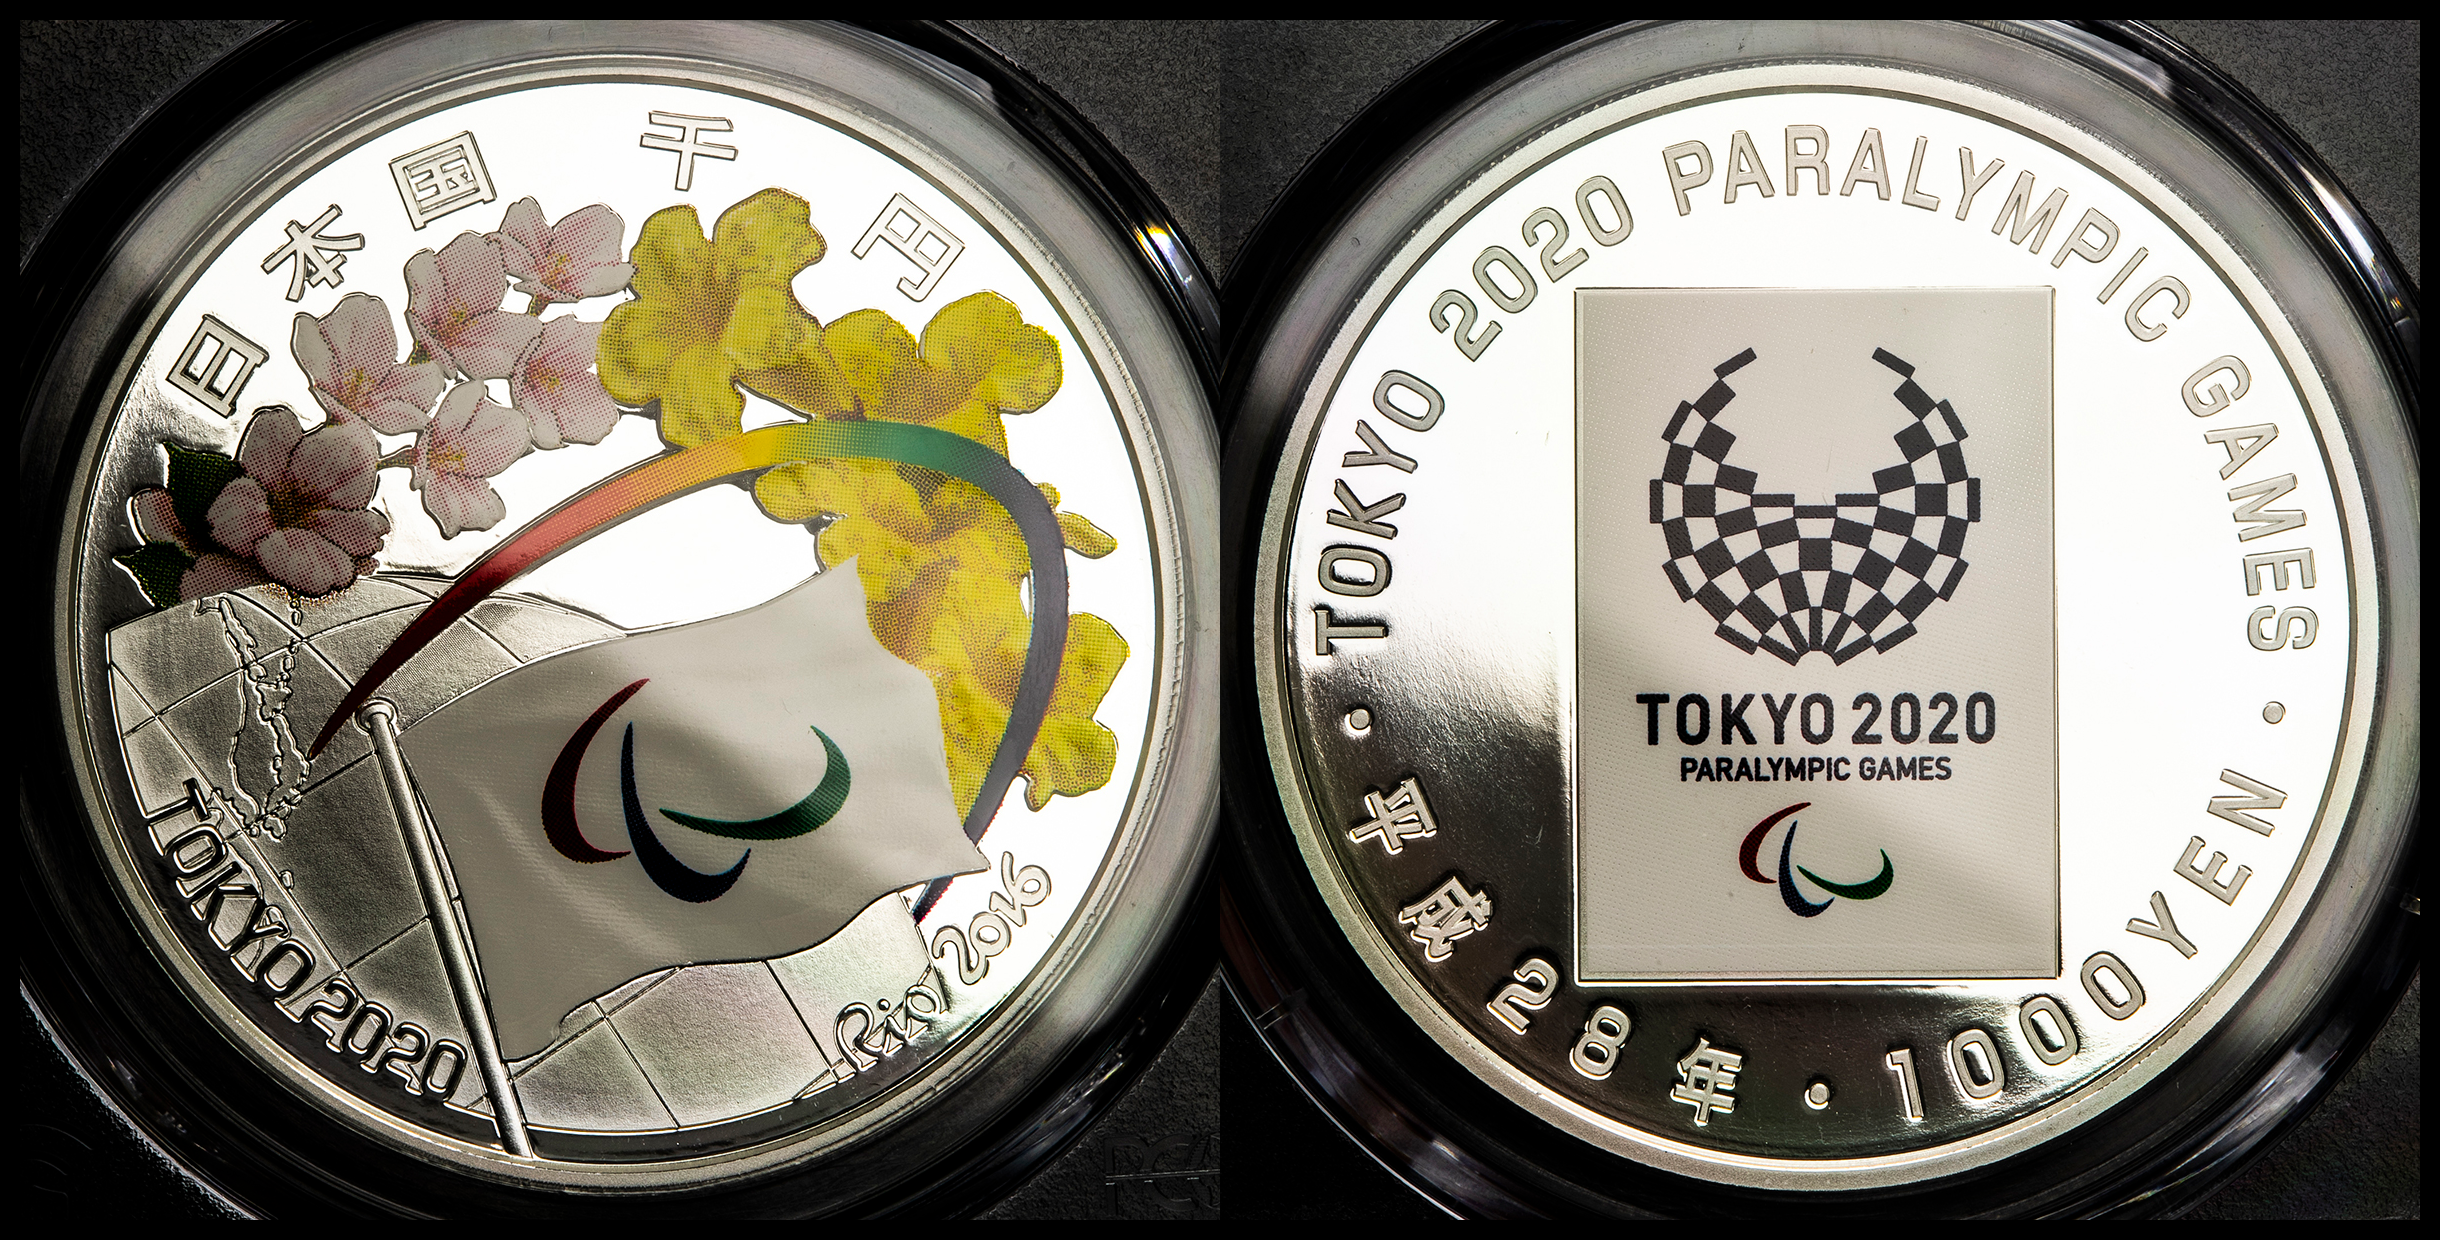 限时竞拍,日本東京2020年パラリンピック競技大会記念千円銀貨Tokyo